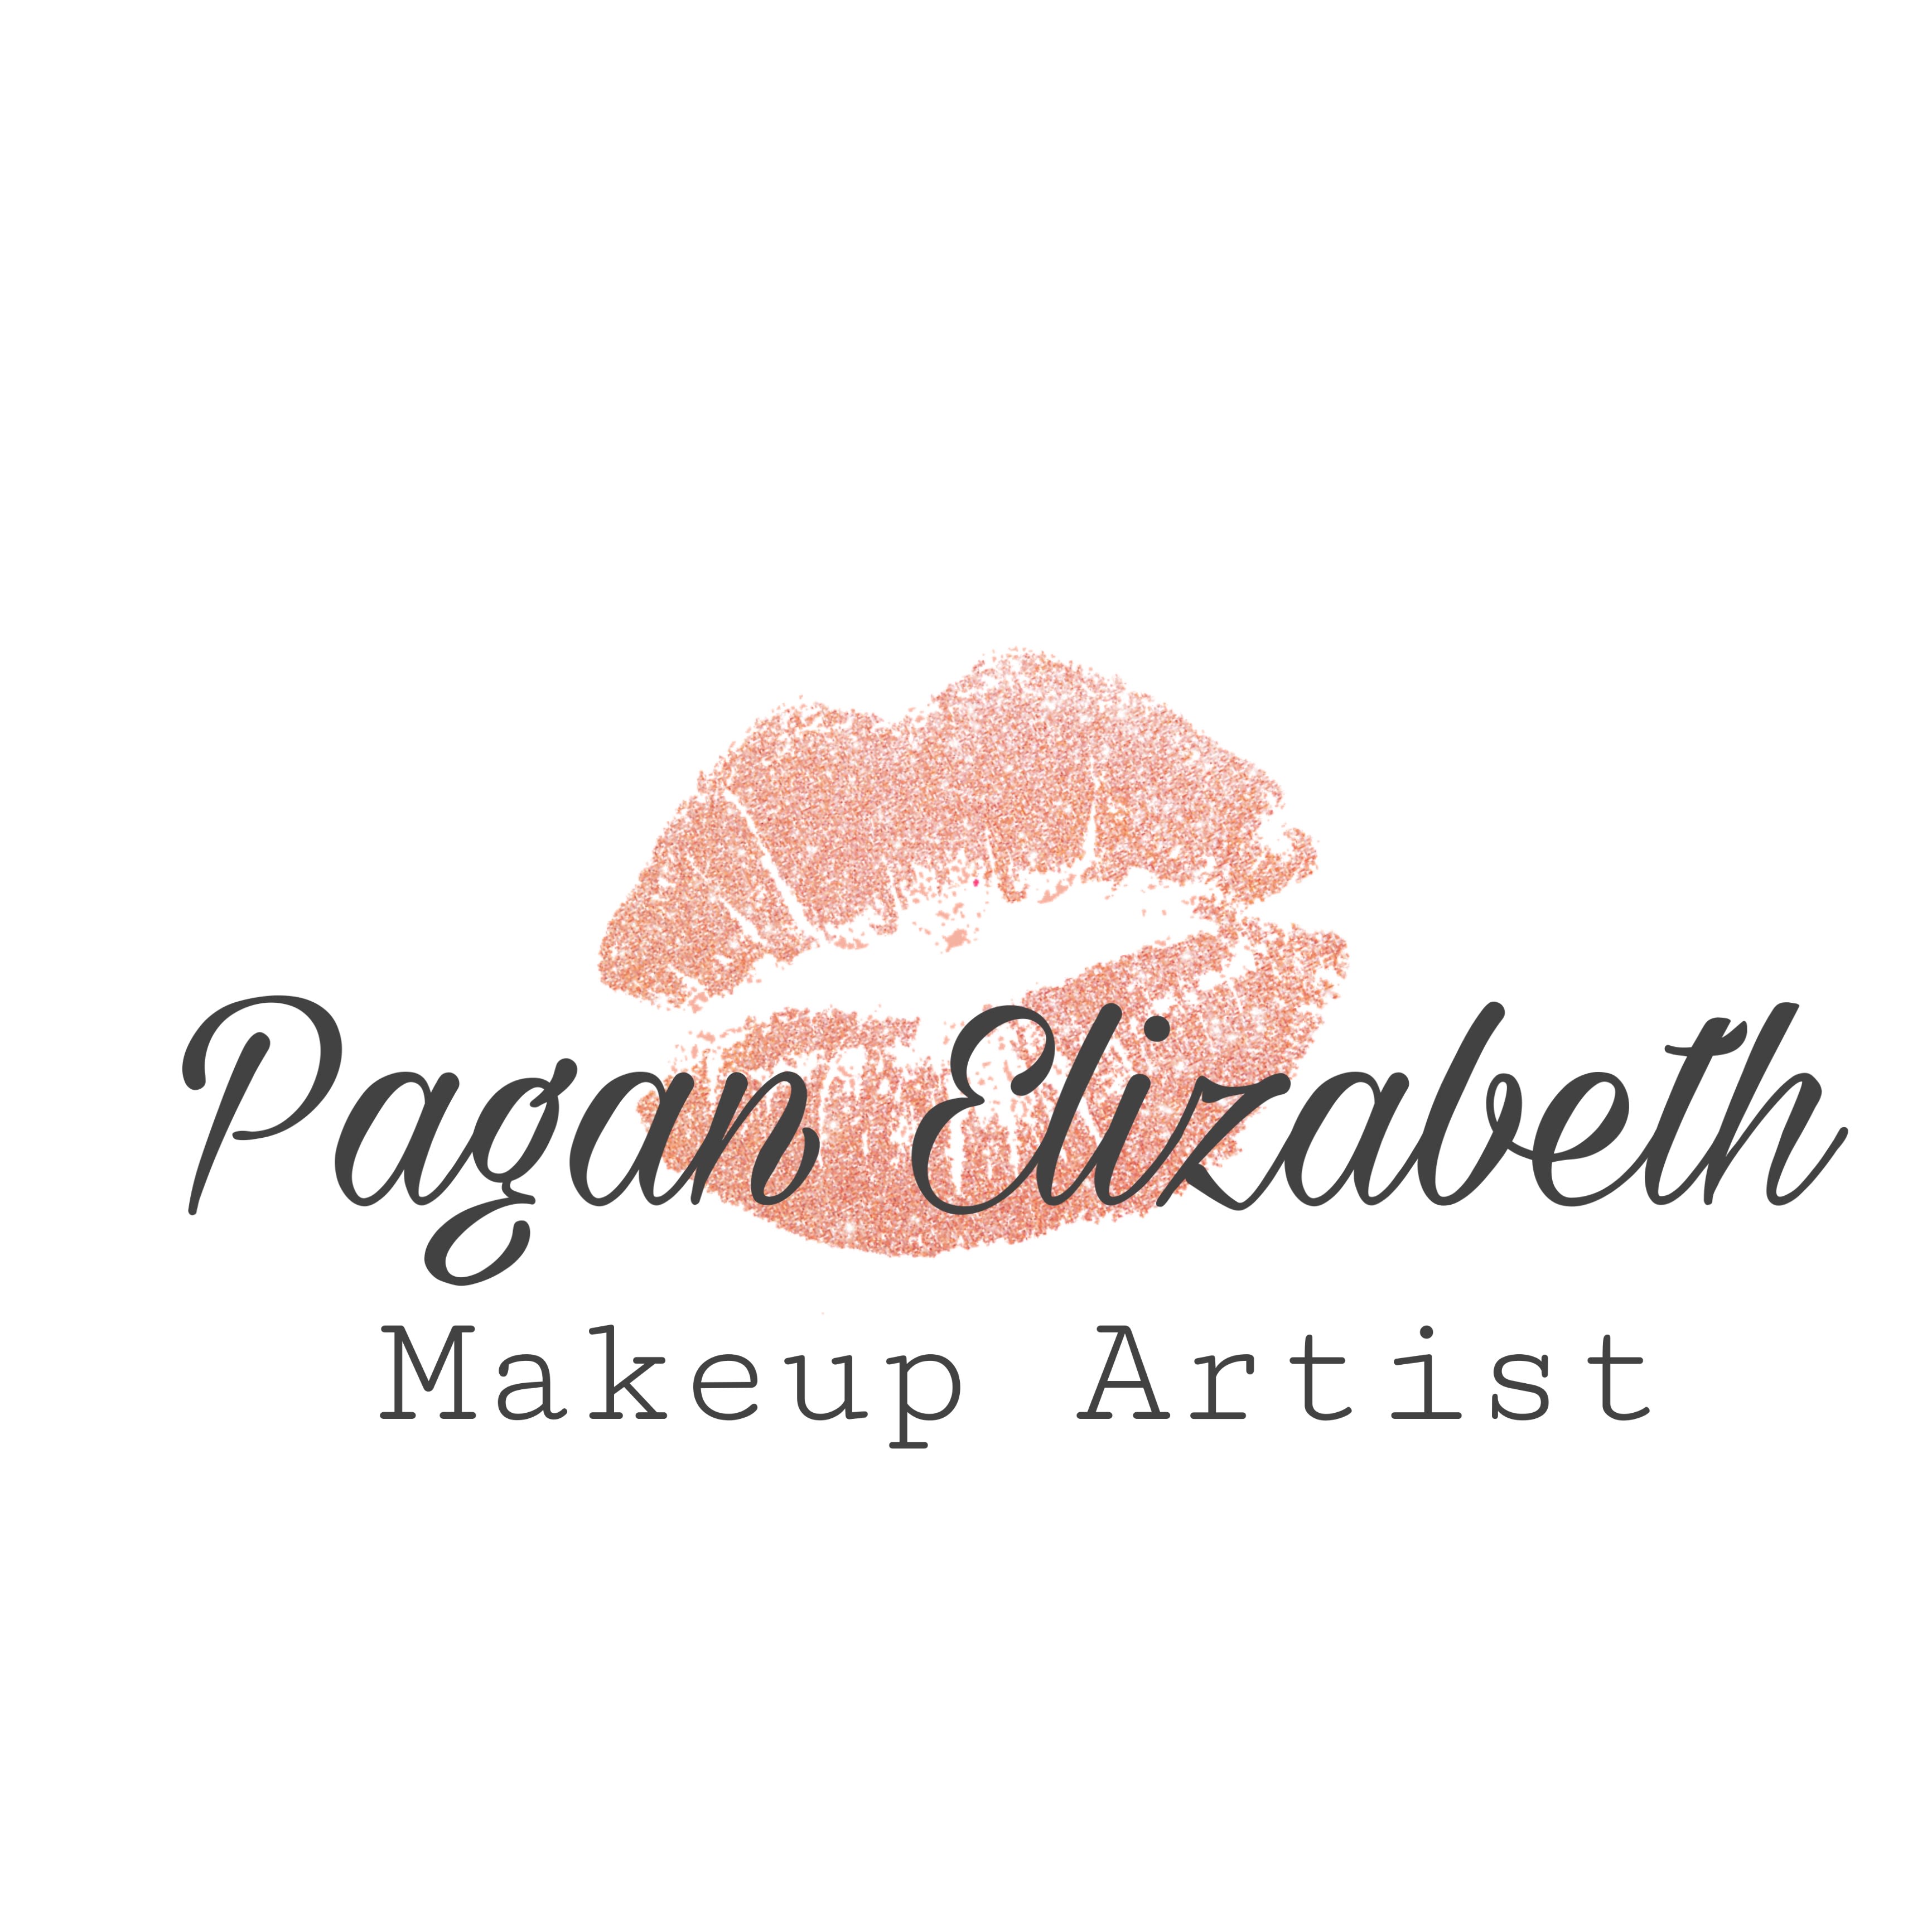 Pagan Elizabeth Makeup